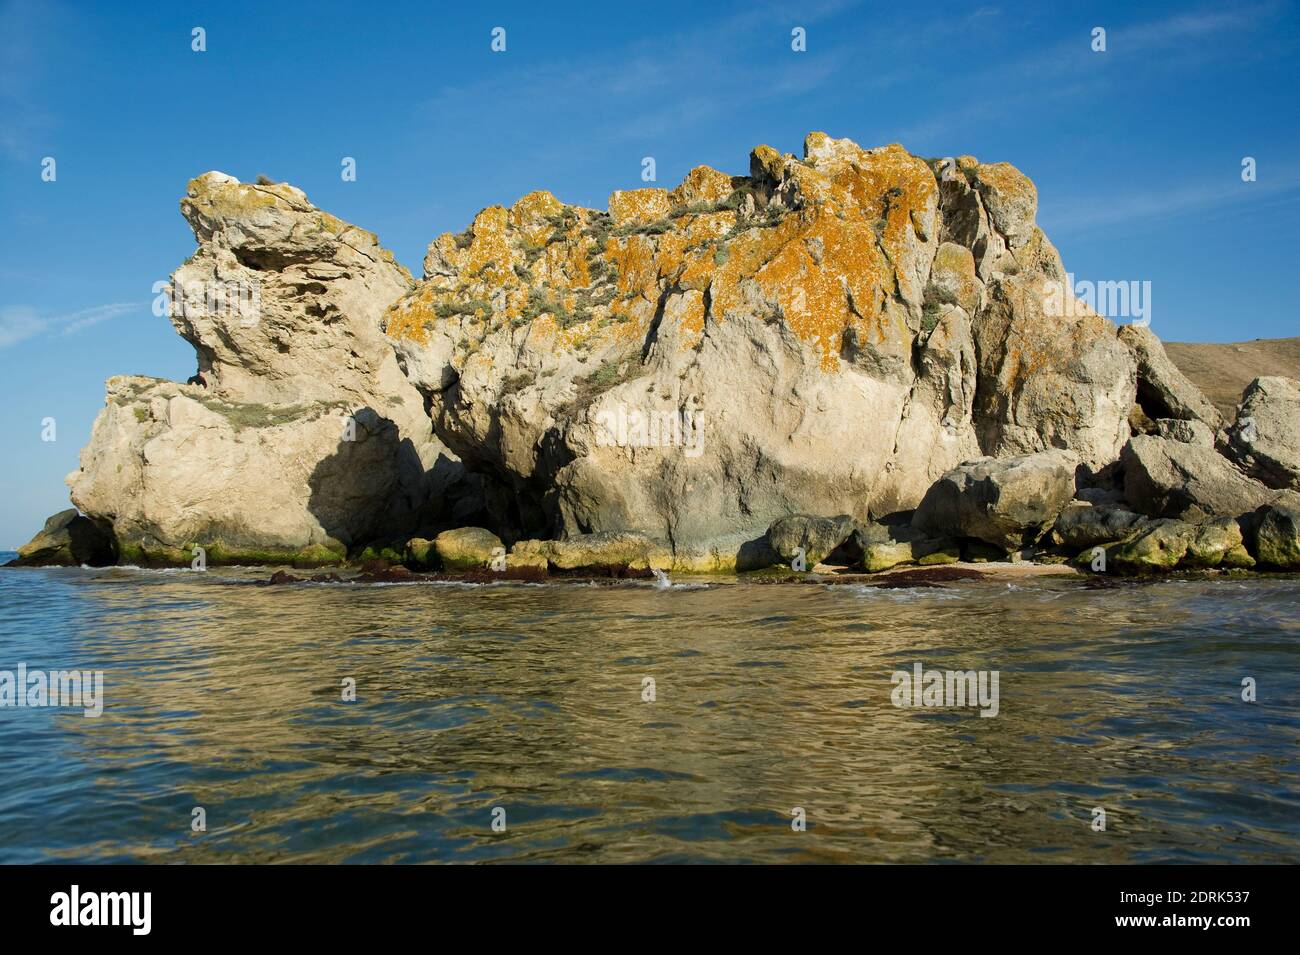 Une baie pittoresque entourée de rochers sur la mer d'Azov. Banque D'Images